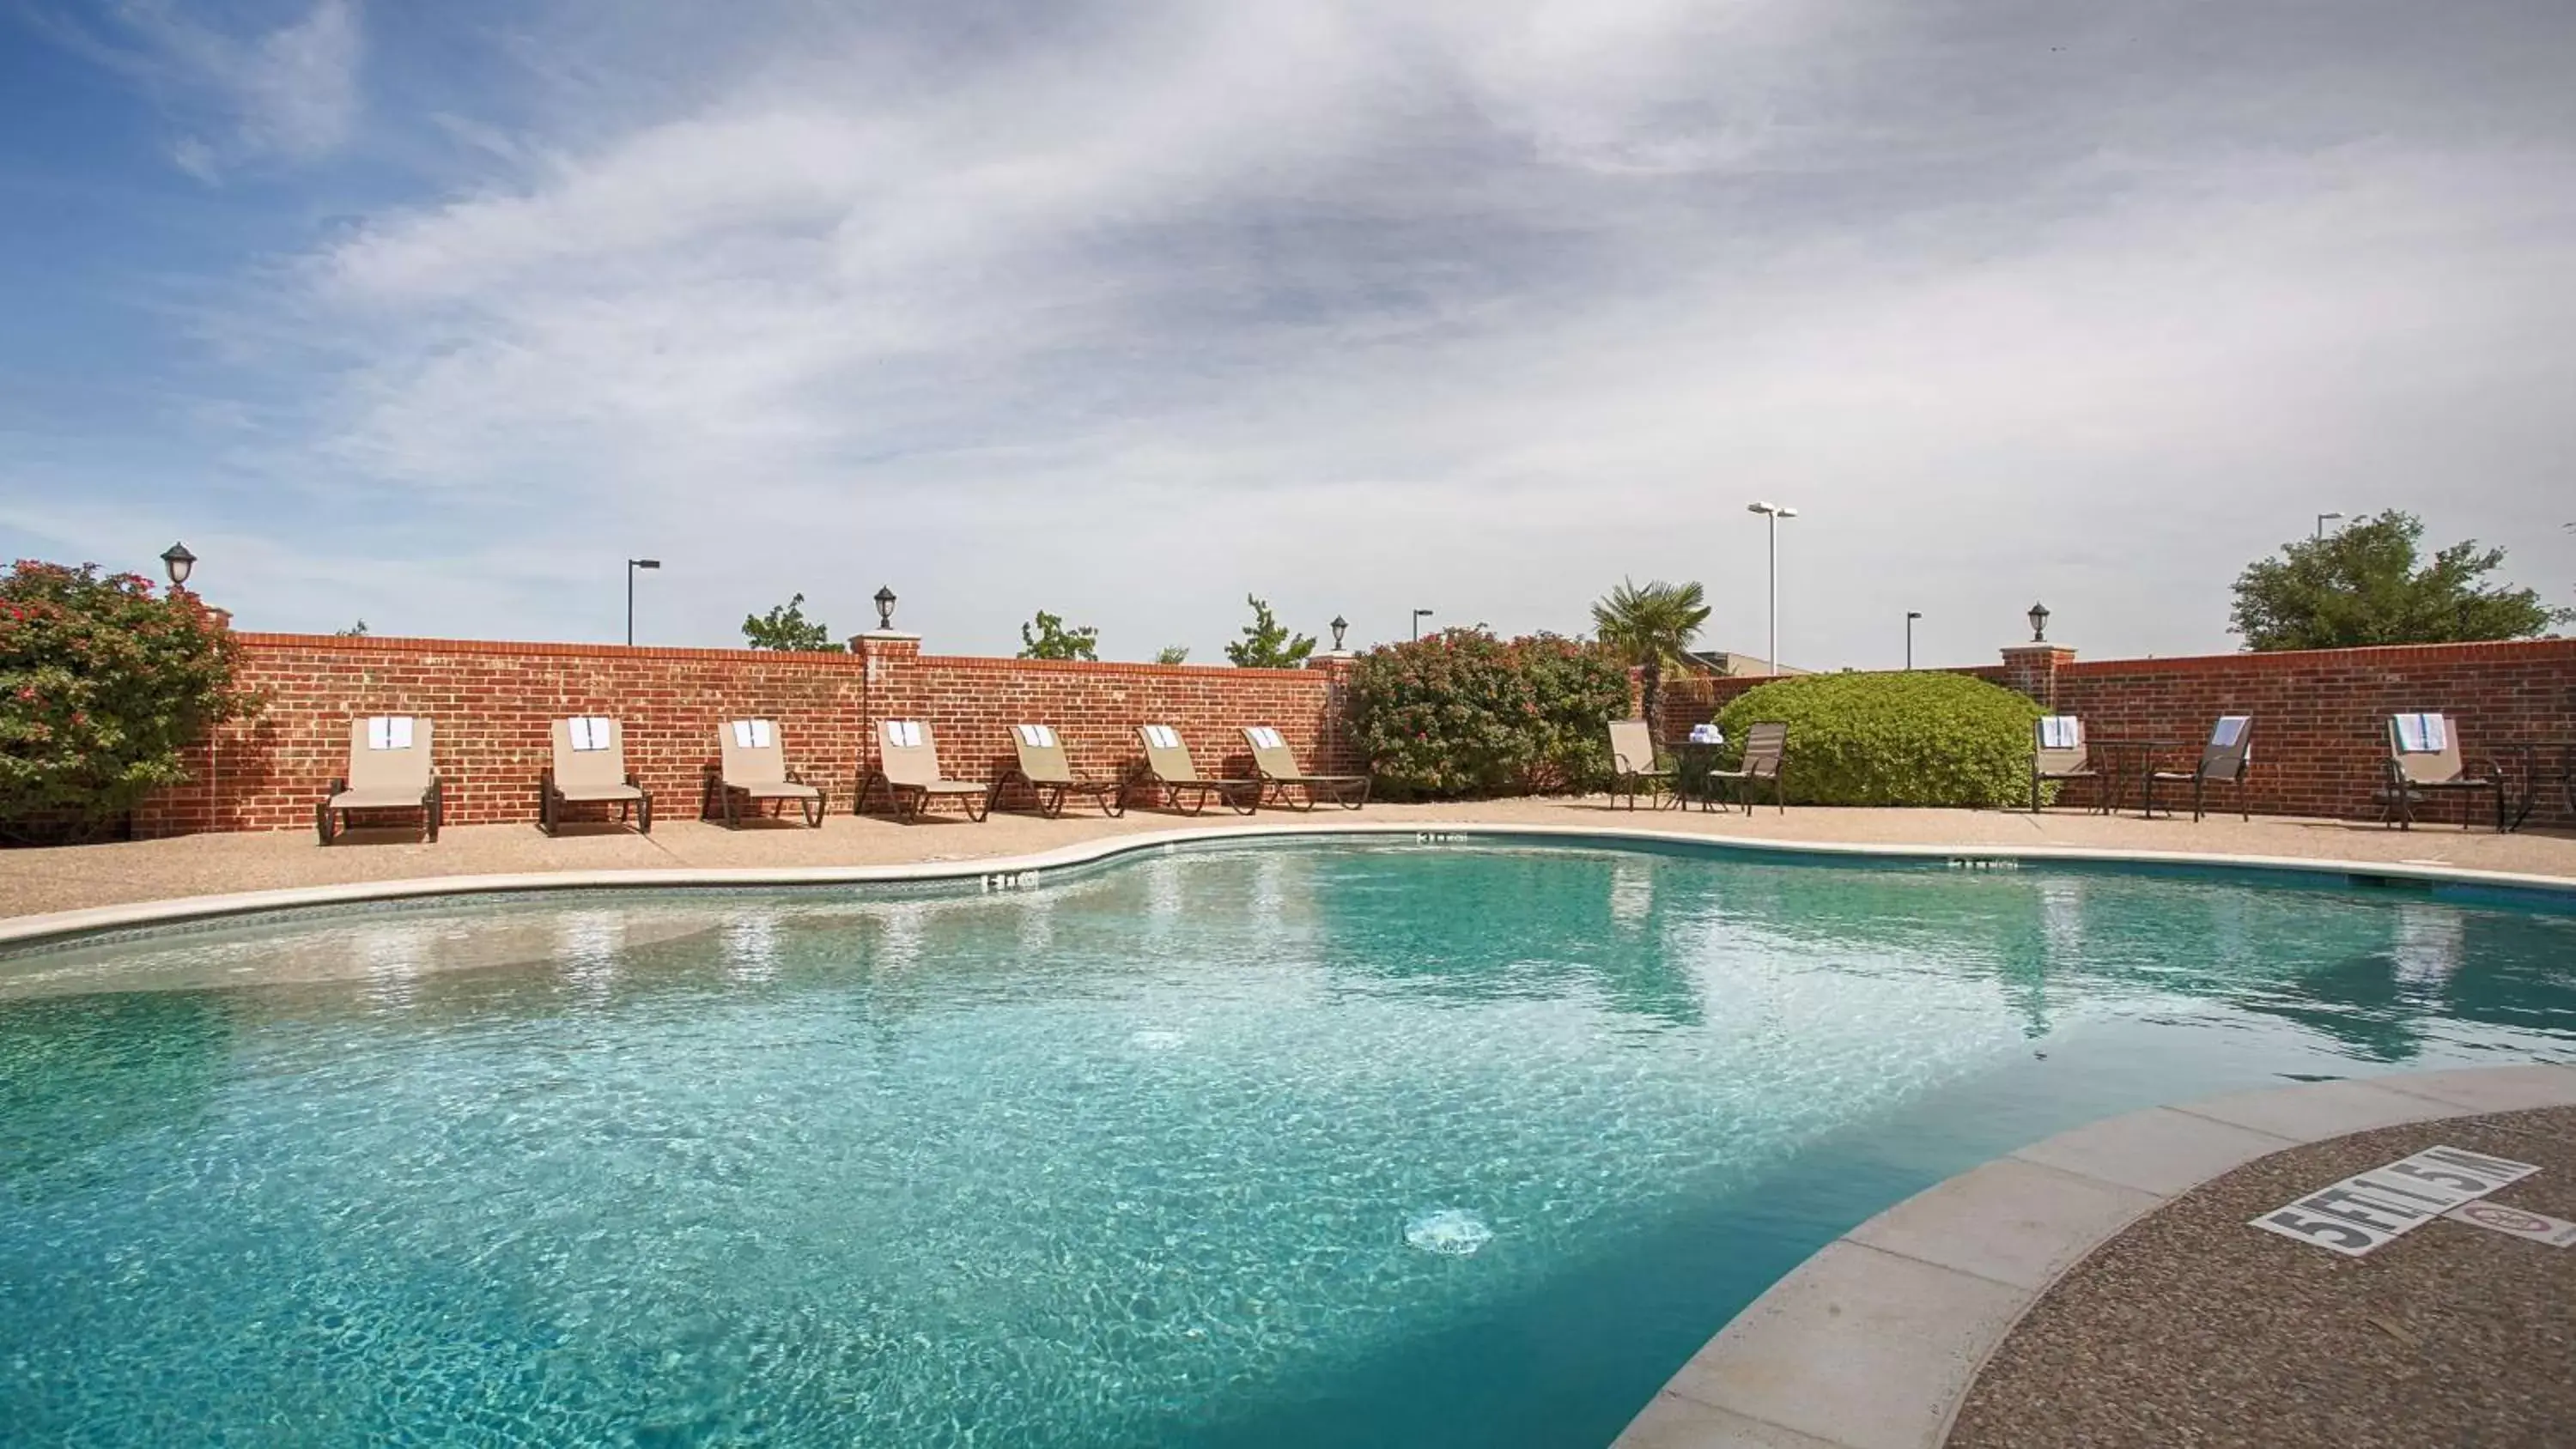 On site, Swimming Pool in Best Western Plus Waxahachie Inn & Suites